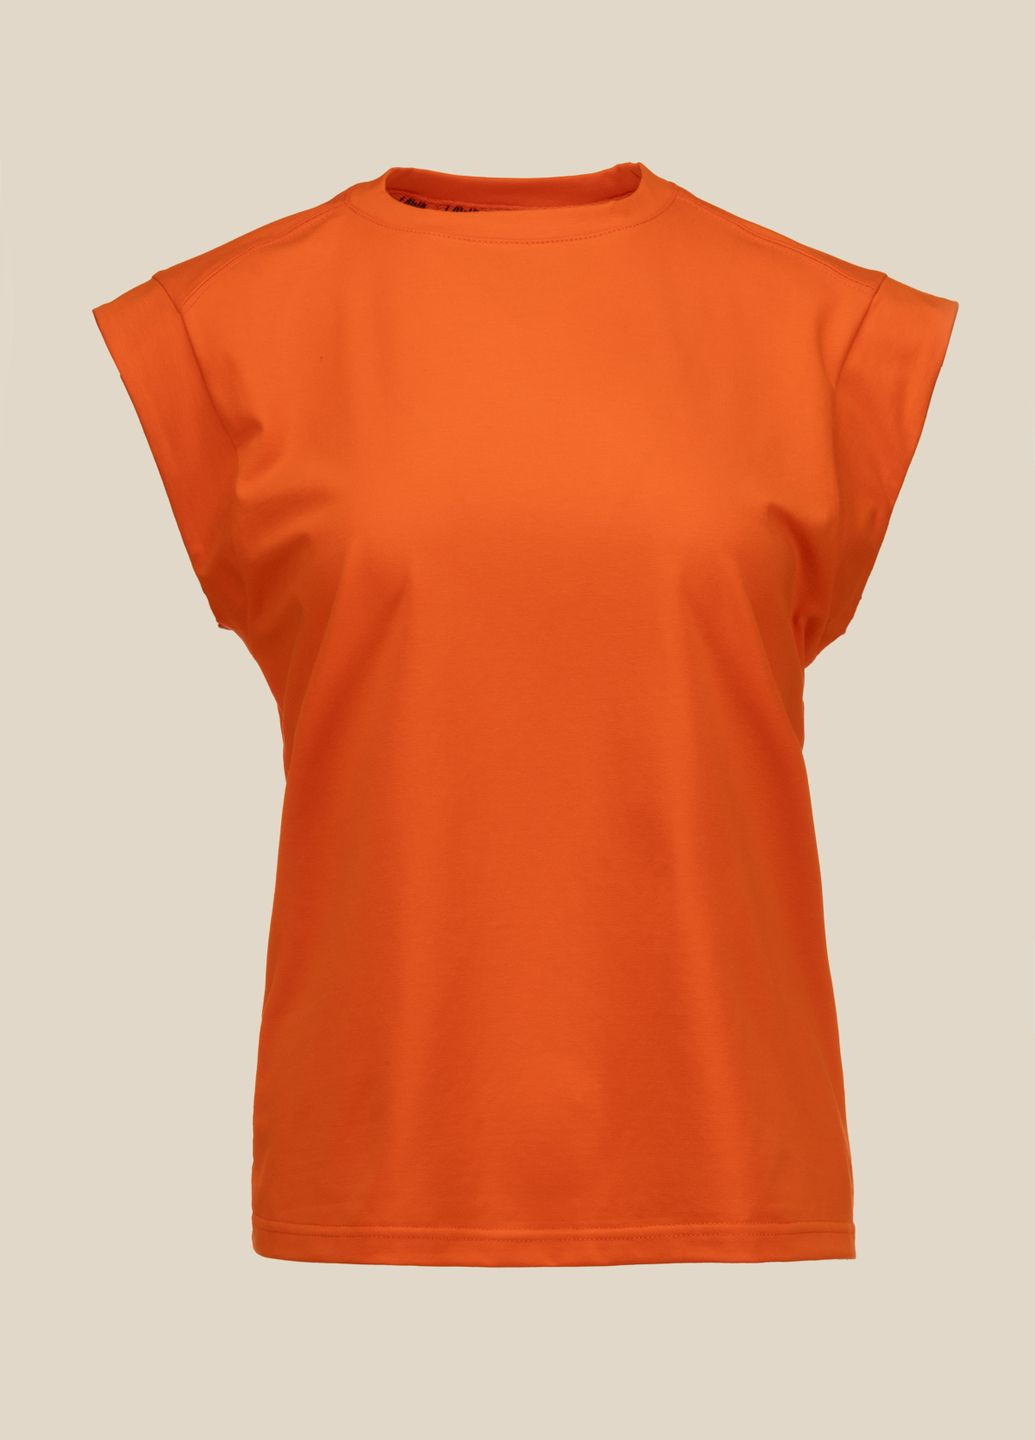 Оранжевая летняя футболка LAWA